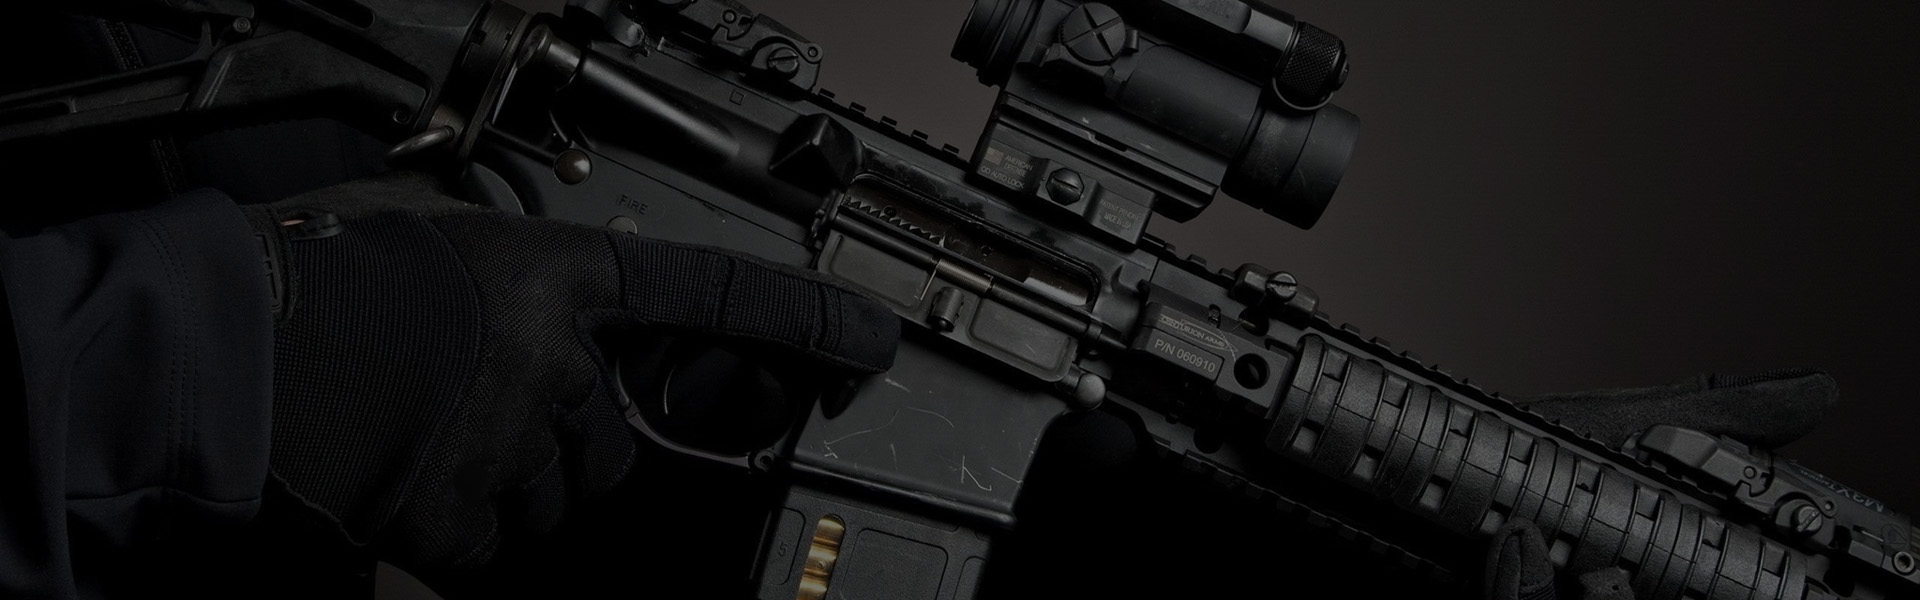 6 Shot Standard Official God'A Grip Ammo Carrier 